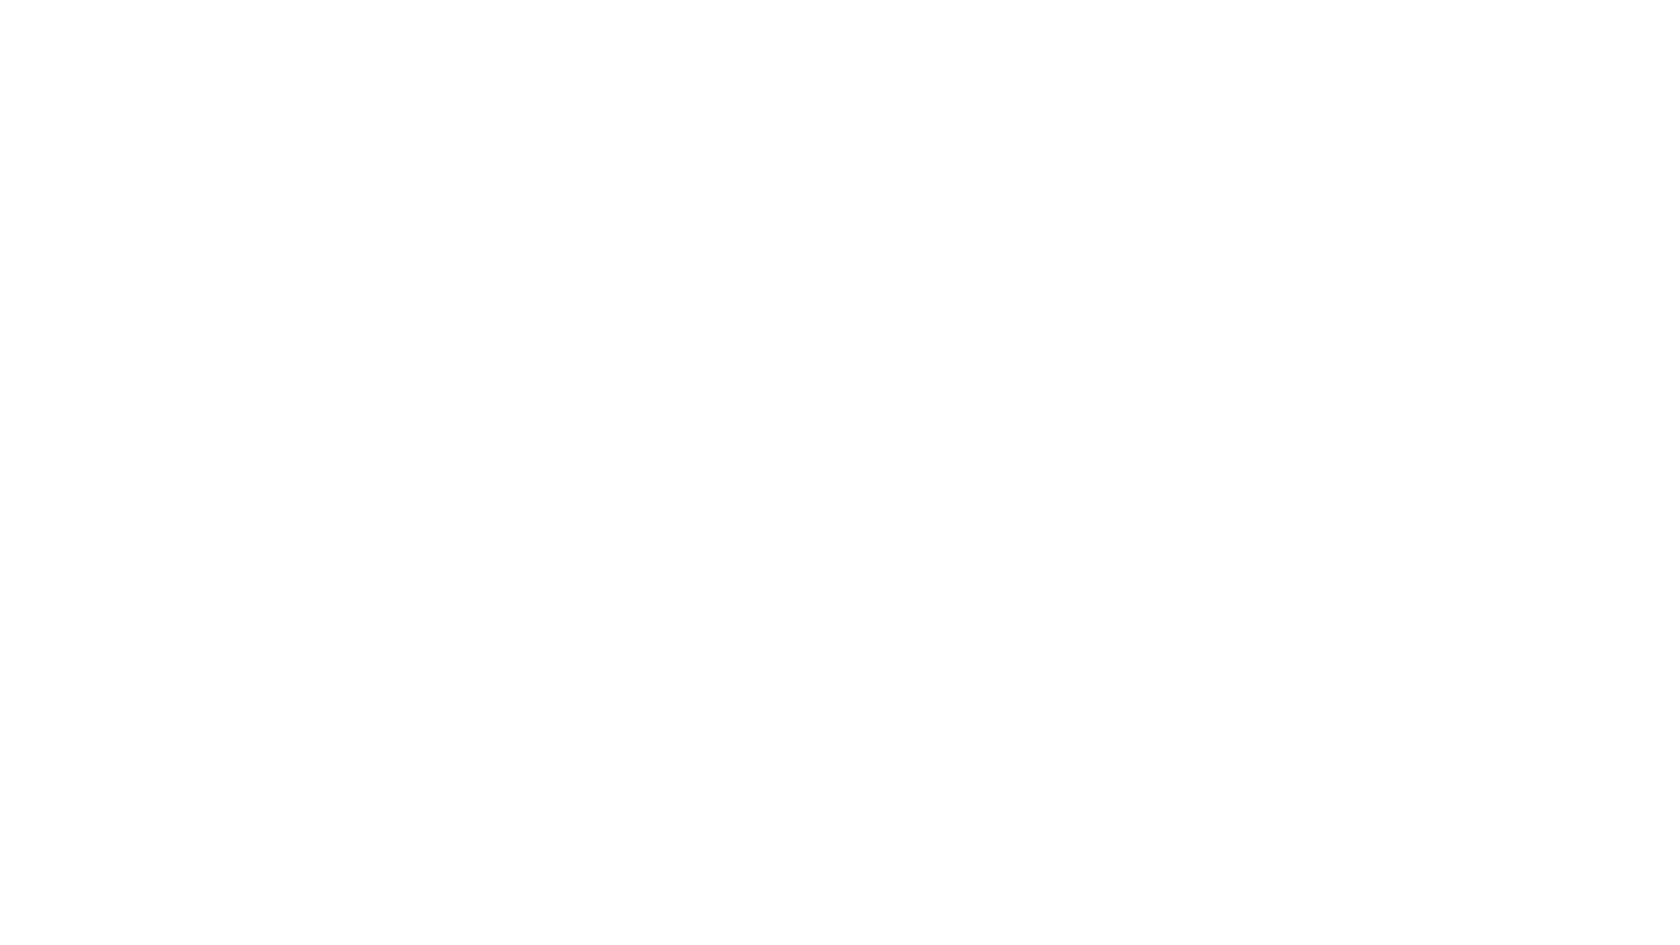 Дом украшен логотипом ЖК "Мелодия" с подсветкой и расположен так, что его видно издалека и со всех сторон